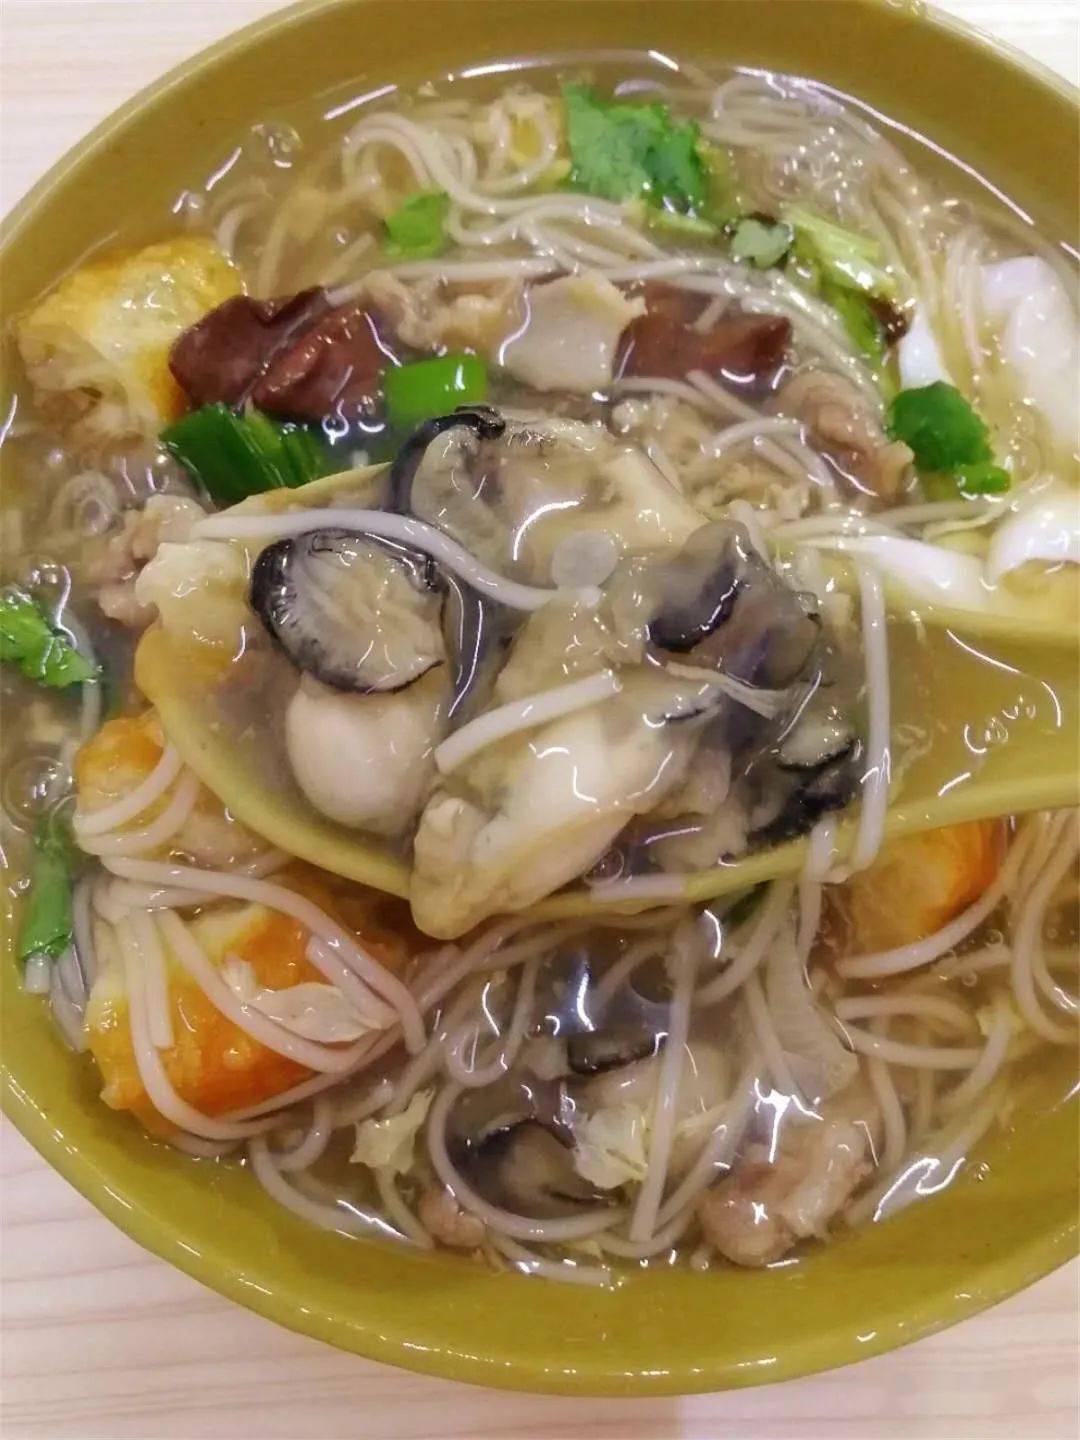 也有海蛎煎哦是漳州传统的做法外层酥脆,吃起来咔呲咔呲海蛎藏在里面